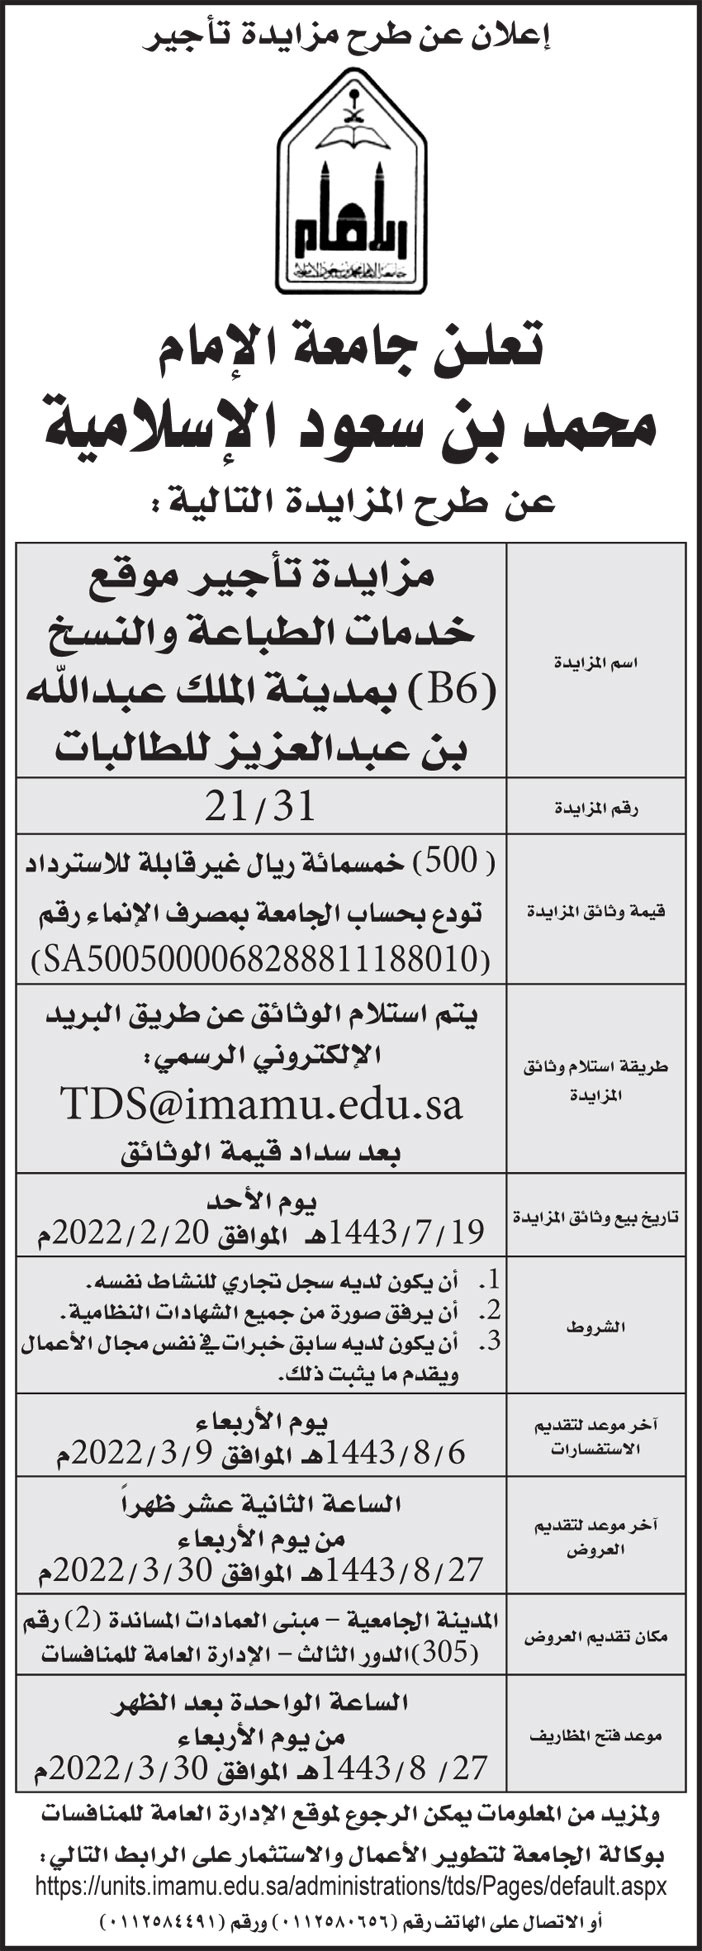 جامعة الإمام محمد بن سعود الإسلامية تمدد طرح مزايدة تأجير موقع خدمات الطباعة والنسخ (B6) بمدينة الملك عبدالله بن عبدالعزيز للطالبات 